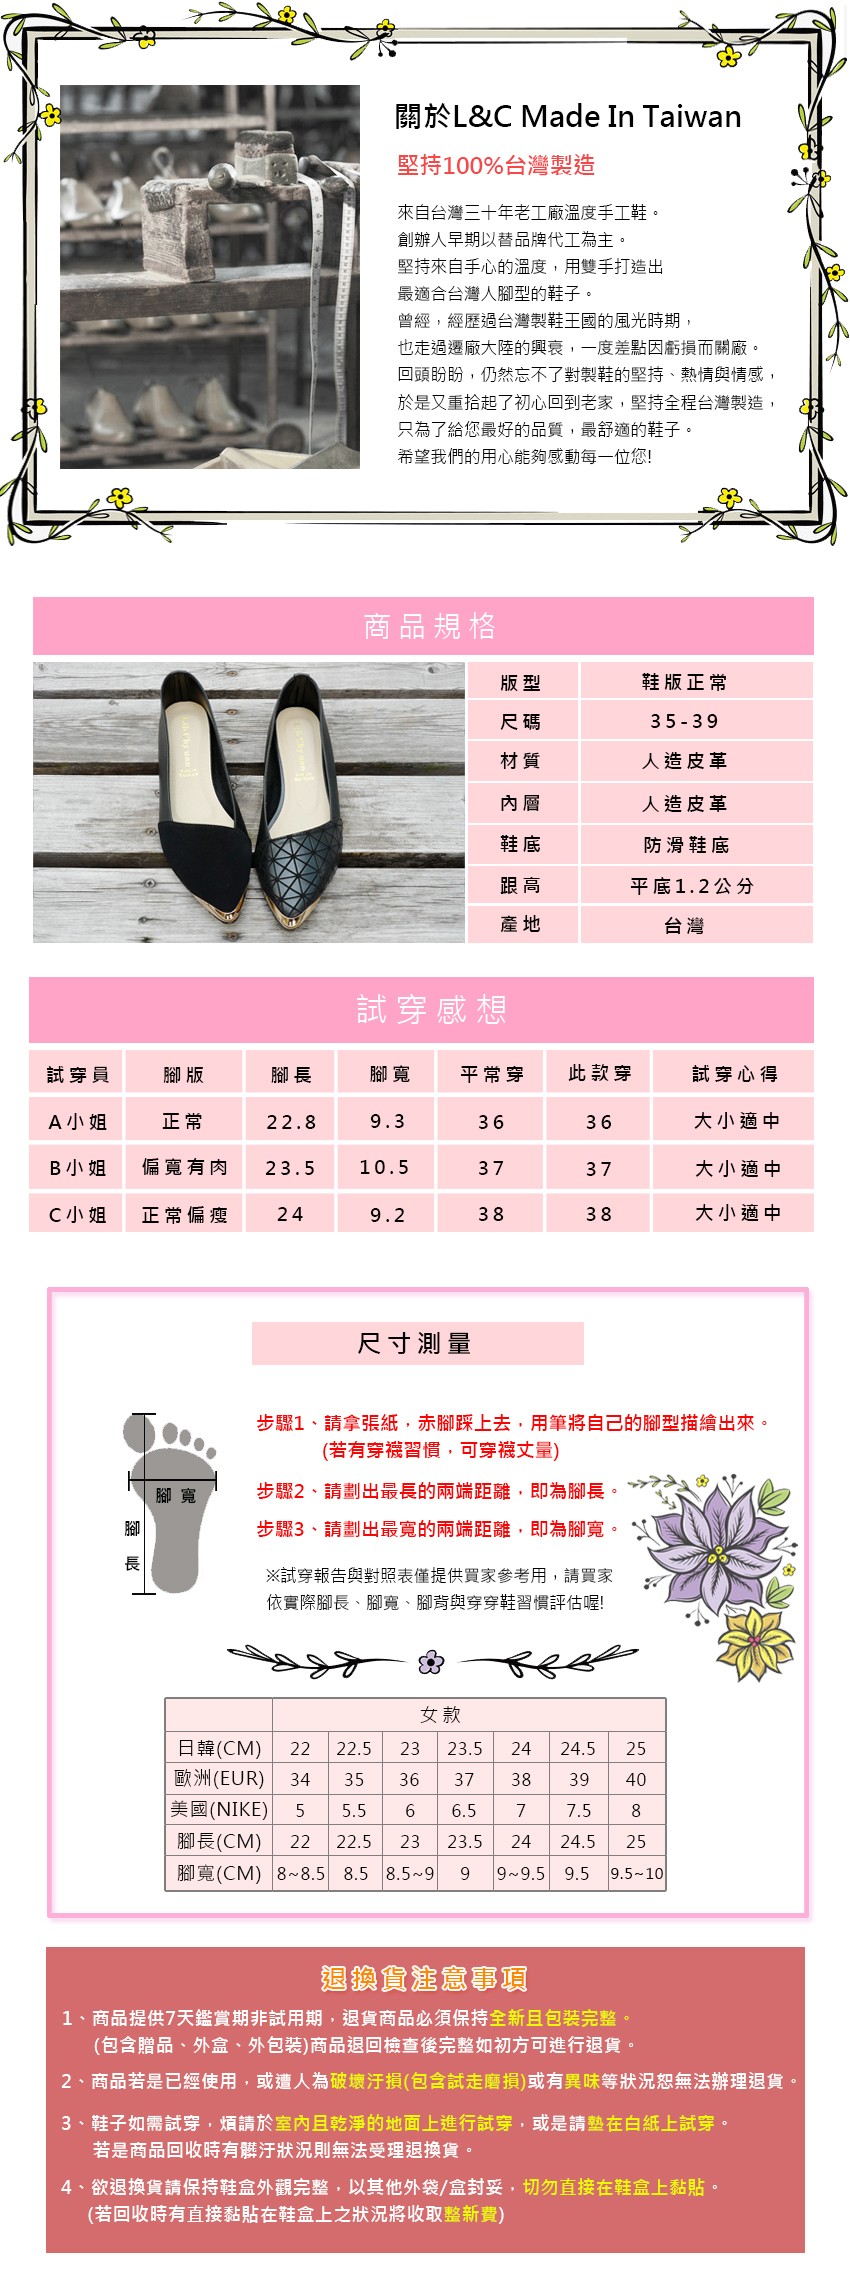 堅持100%台灣製造，來自台灣三十年老工廠溫度手工鞋。創辦人早期以替品牌代工為主。堅持來自手心的溫度,用雙手打造出，最適合台灣人腳型的鞋子。曾經,經歷過台灣製鞋王國的風光時期,也走過遷廠大陸的興衰,一度差點因虧損而關廠。回頭盼盼,仍然忘不了對製鞋的堅